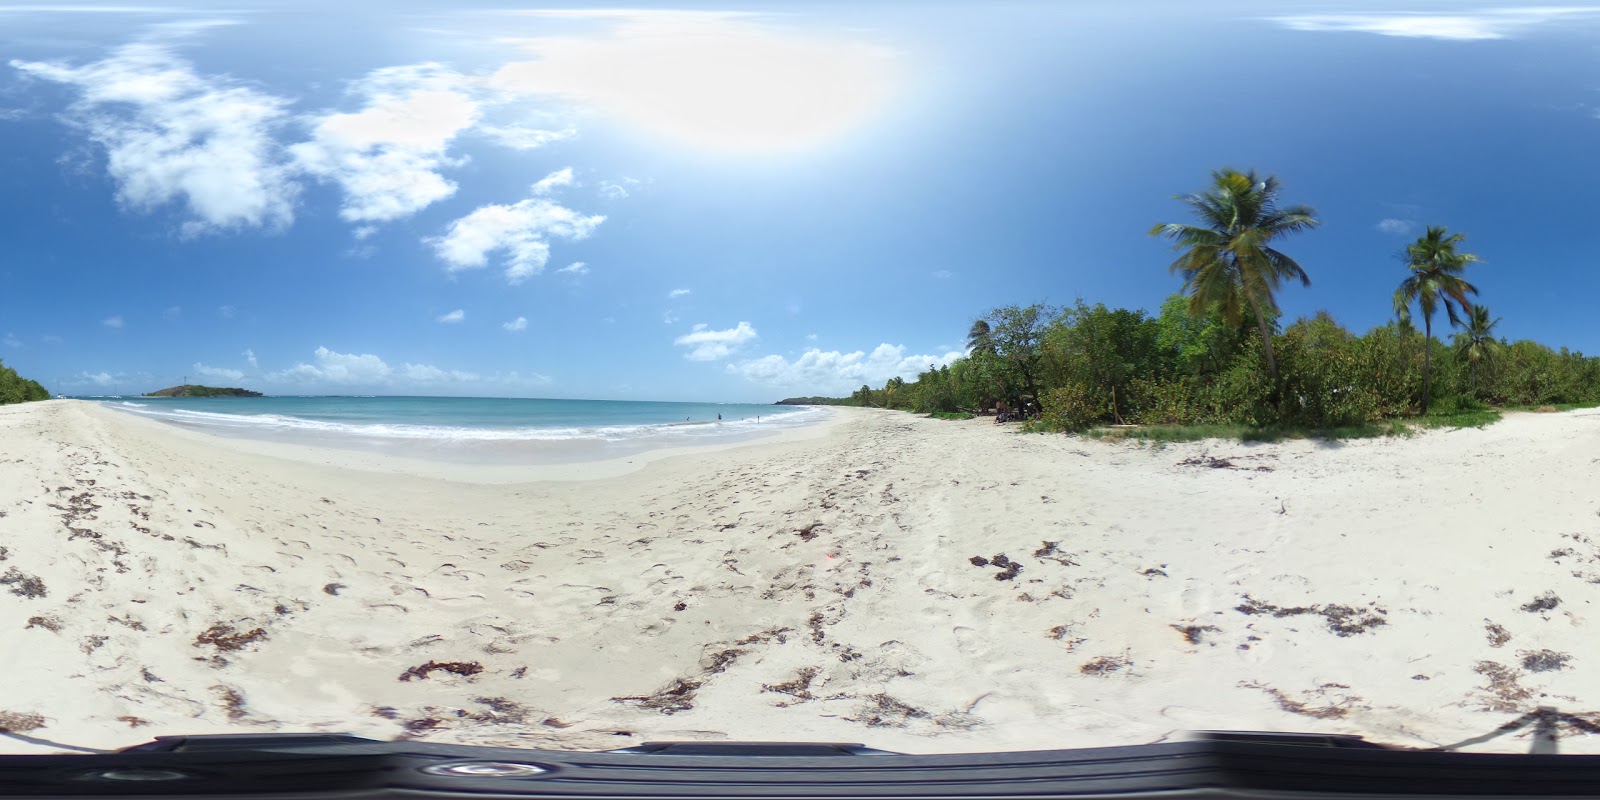 Photo de Grande terre beach - endroit populaire parmi les connaisseurs de la détente